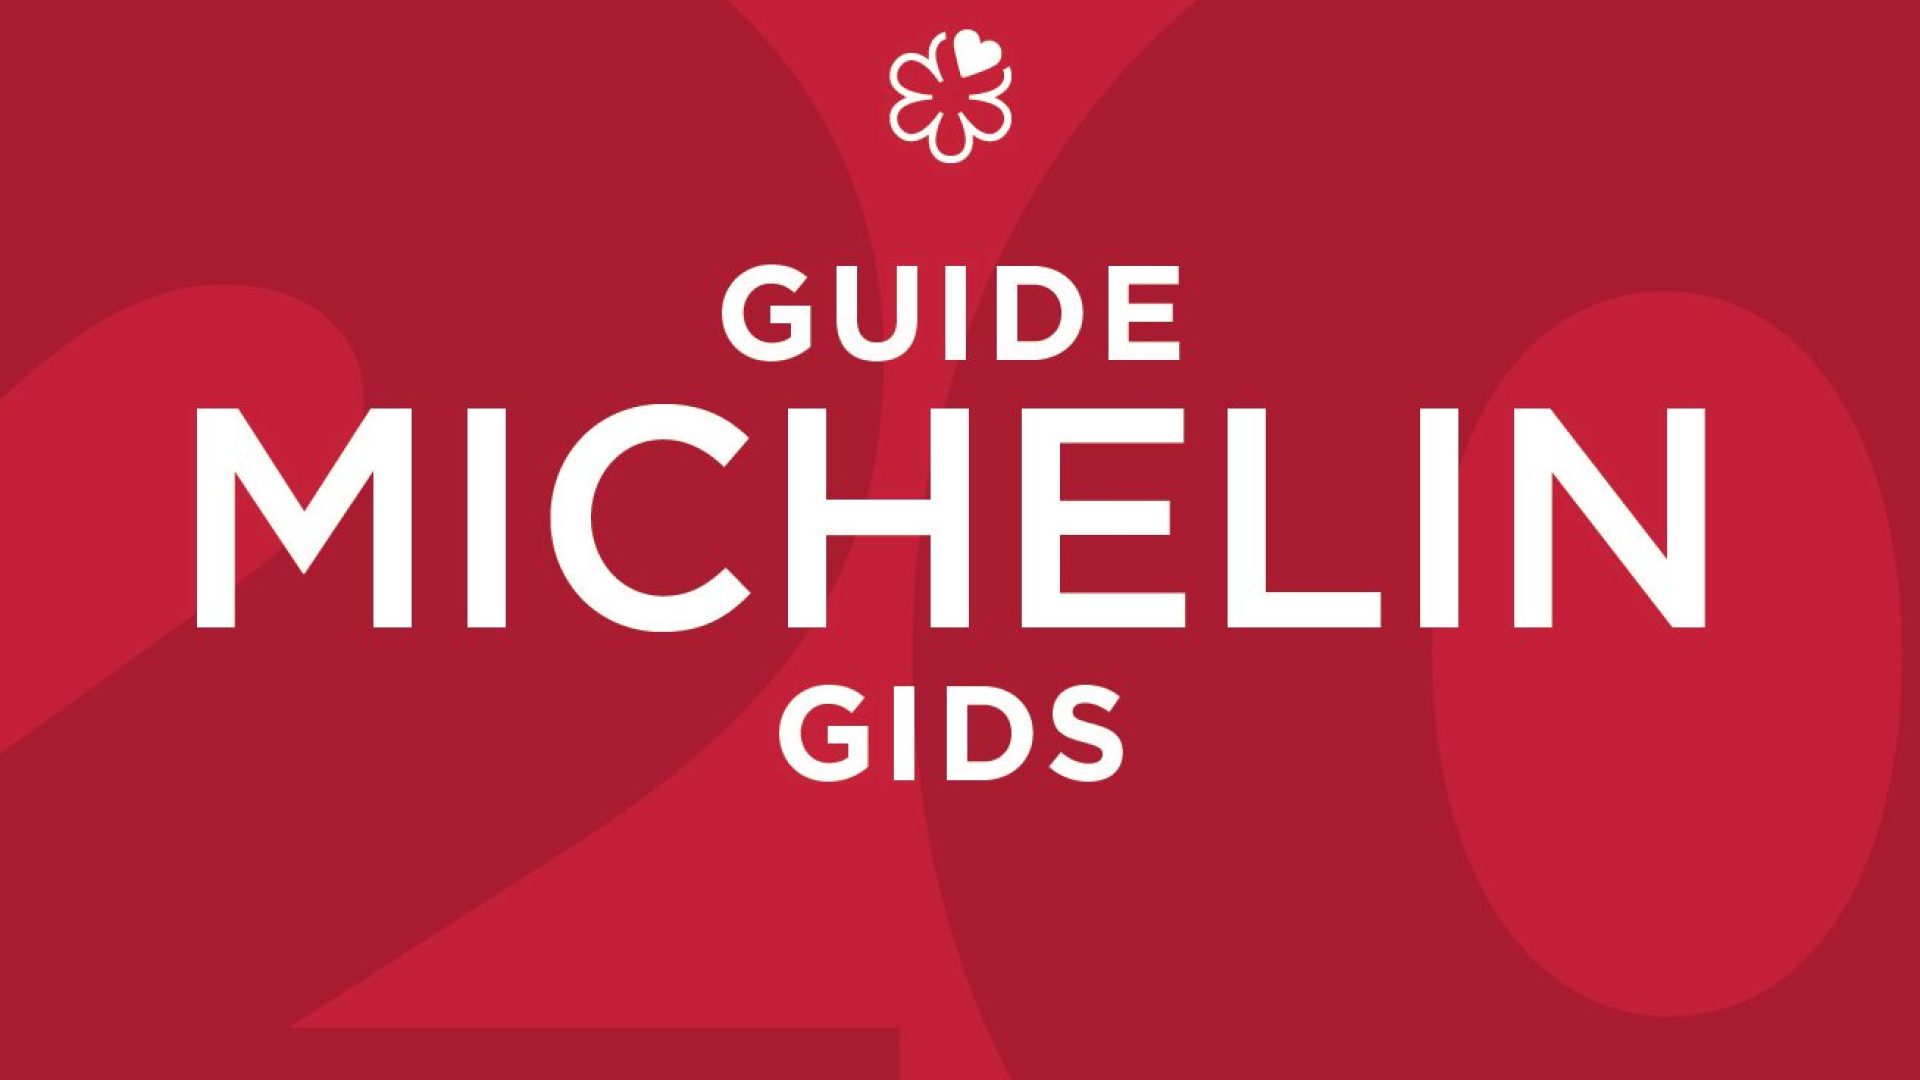 Les lauréats du Guide Michelin Belgique // Luxembourg 2018 sont …